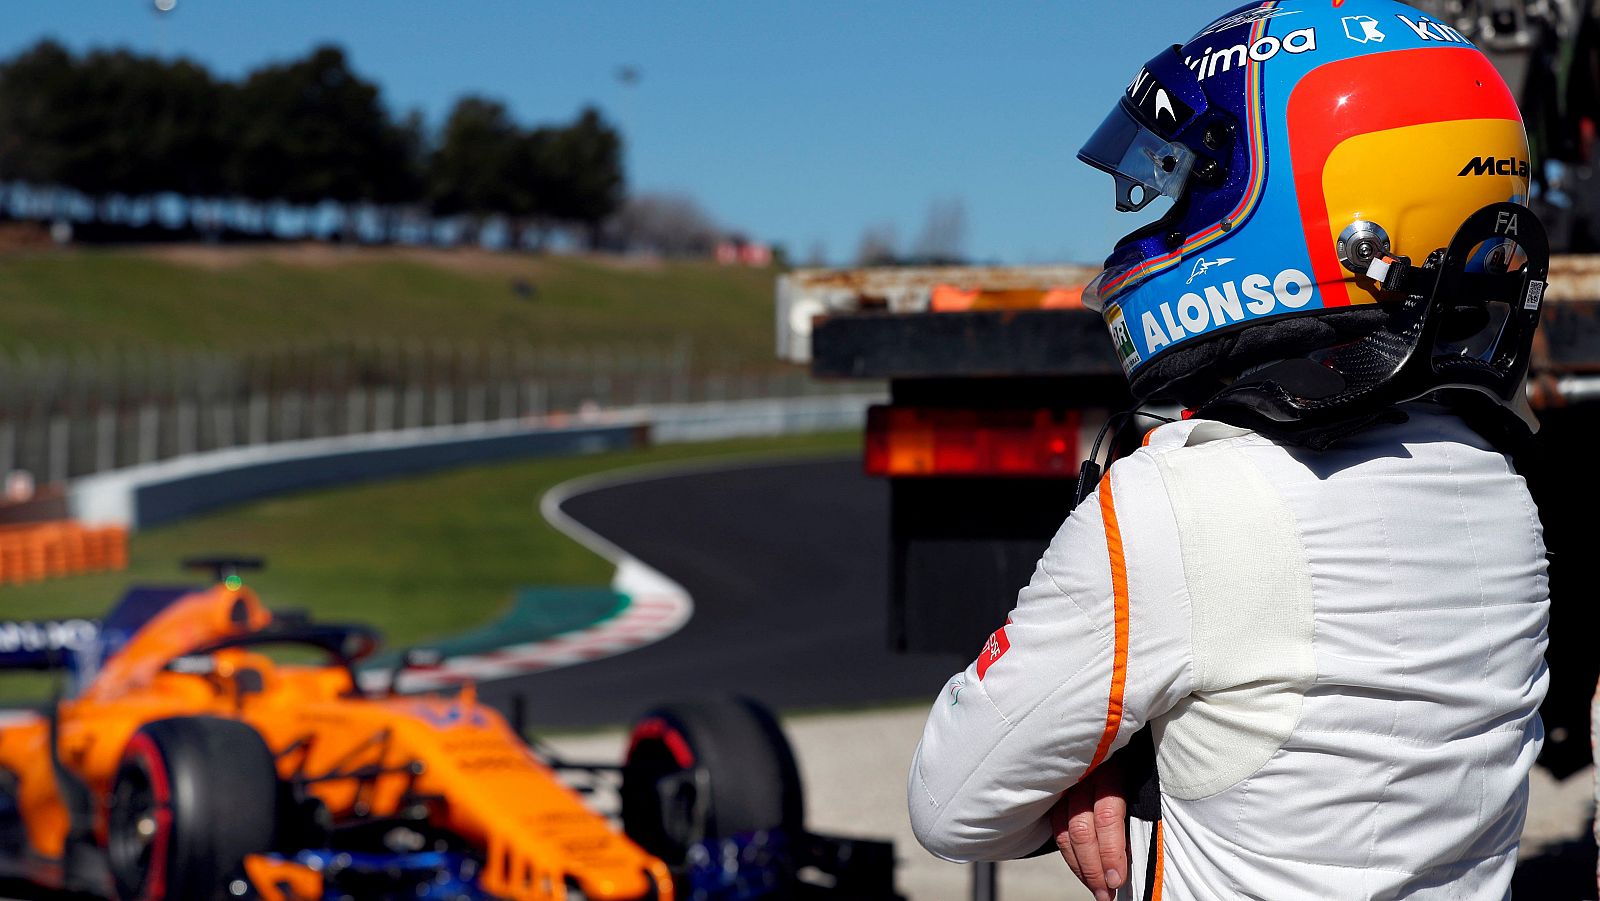 El McLaren deja tirado a Alonso y los comisarios limpian la pista de aceite